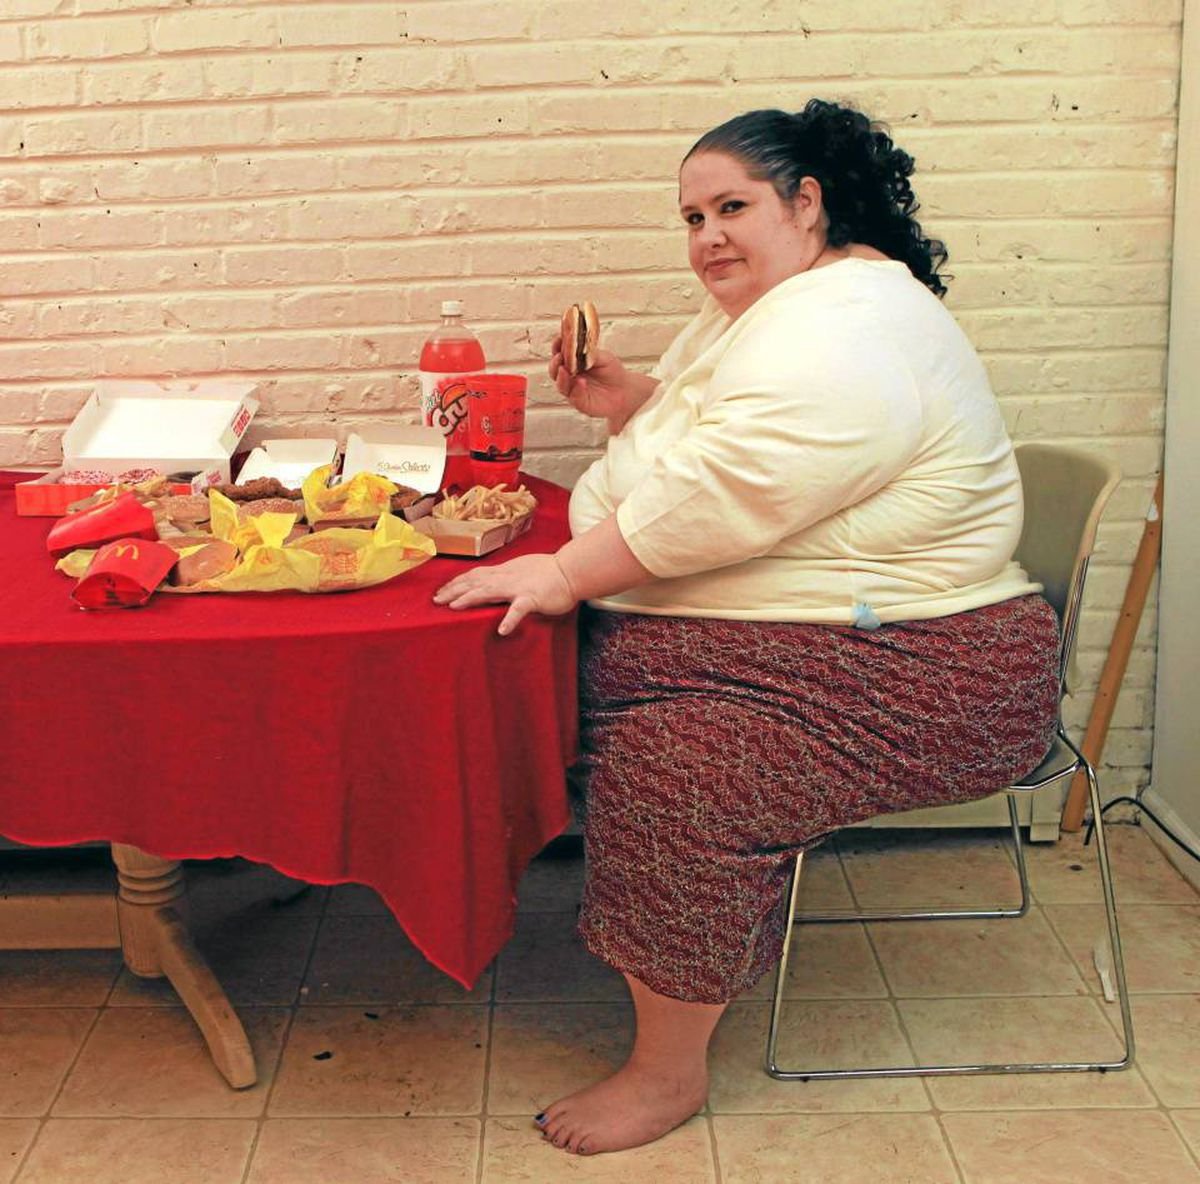 Читать про толстых. Толстая девушка на диете.